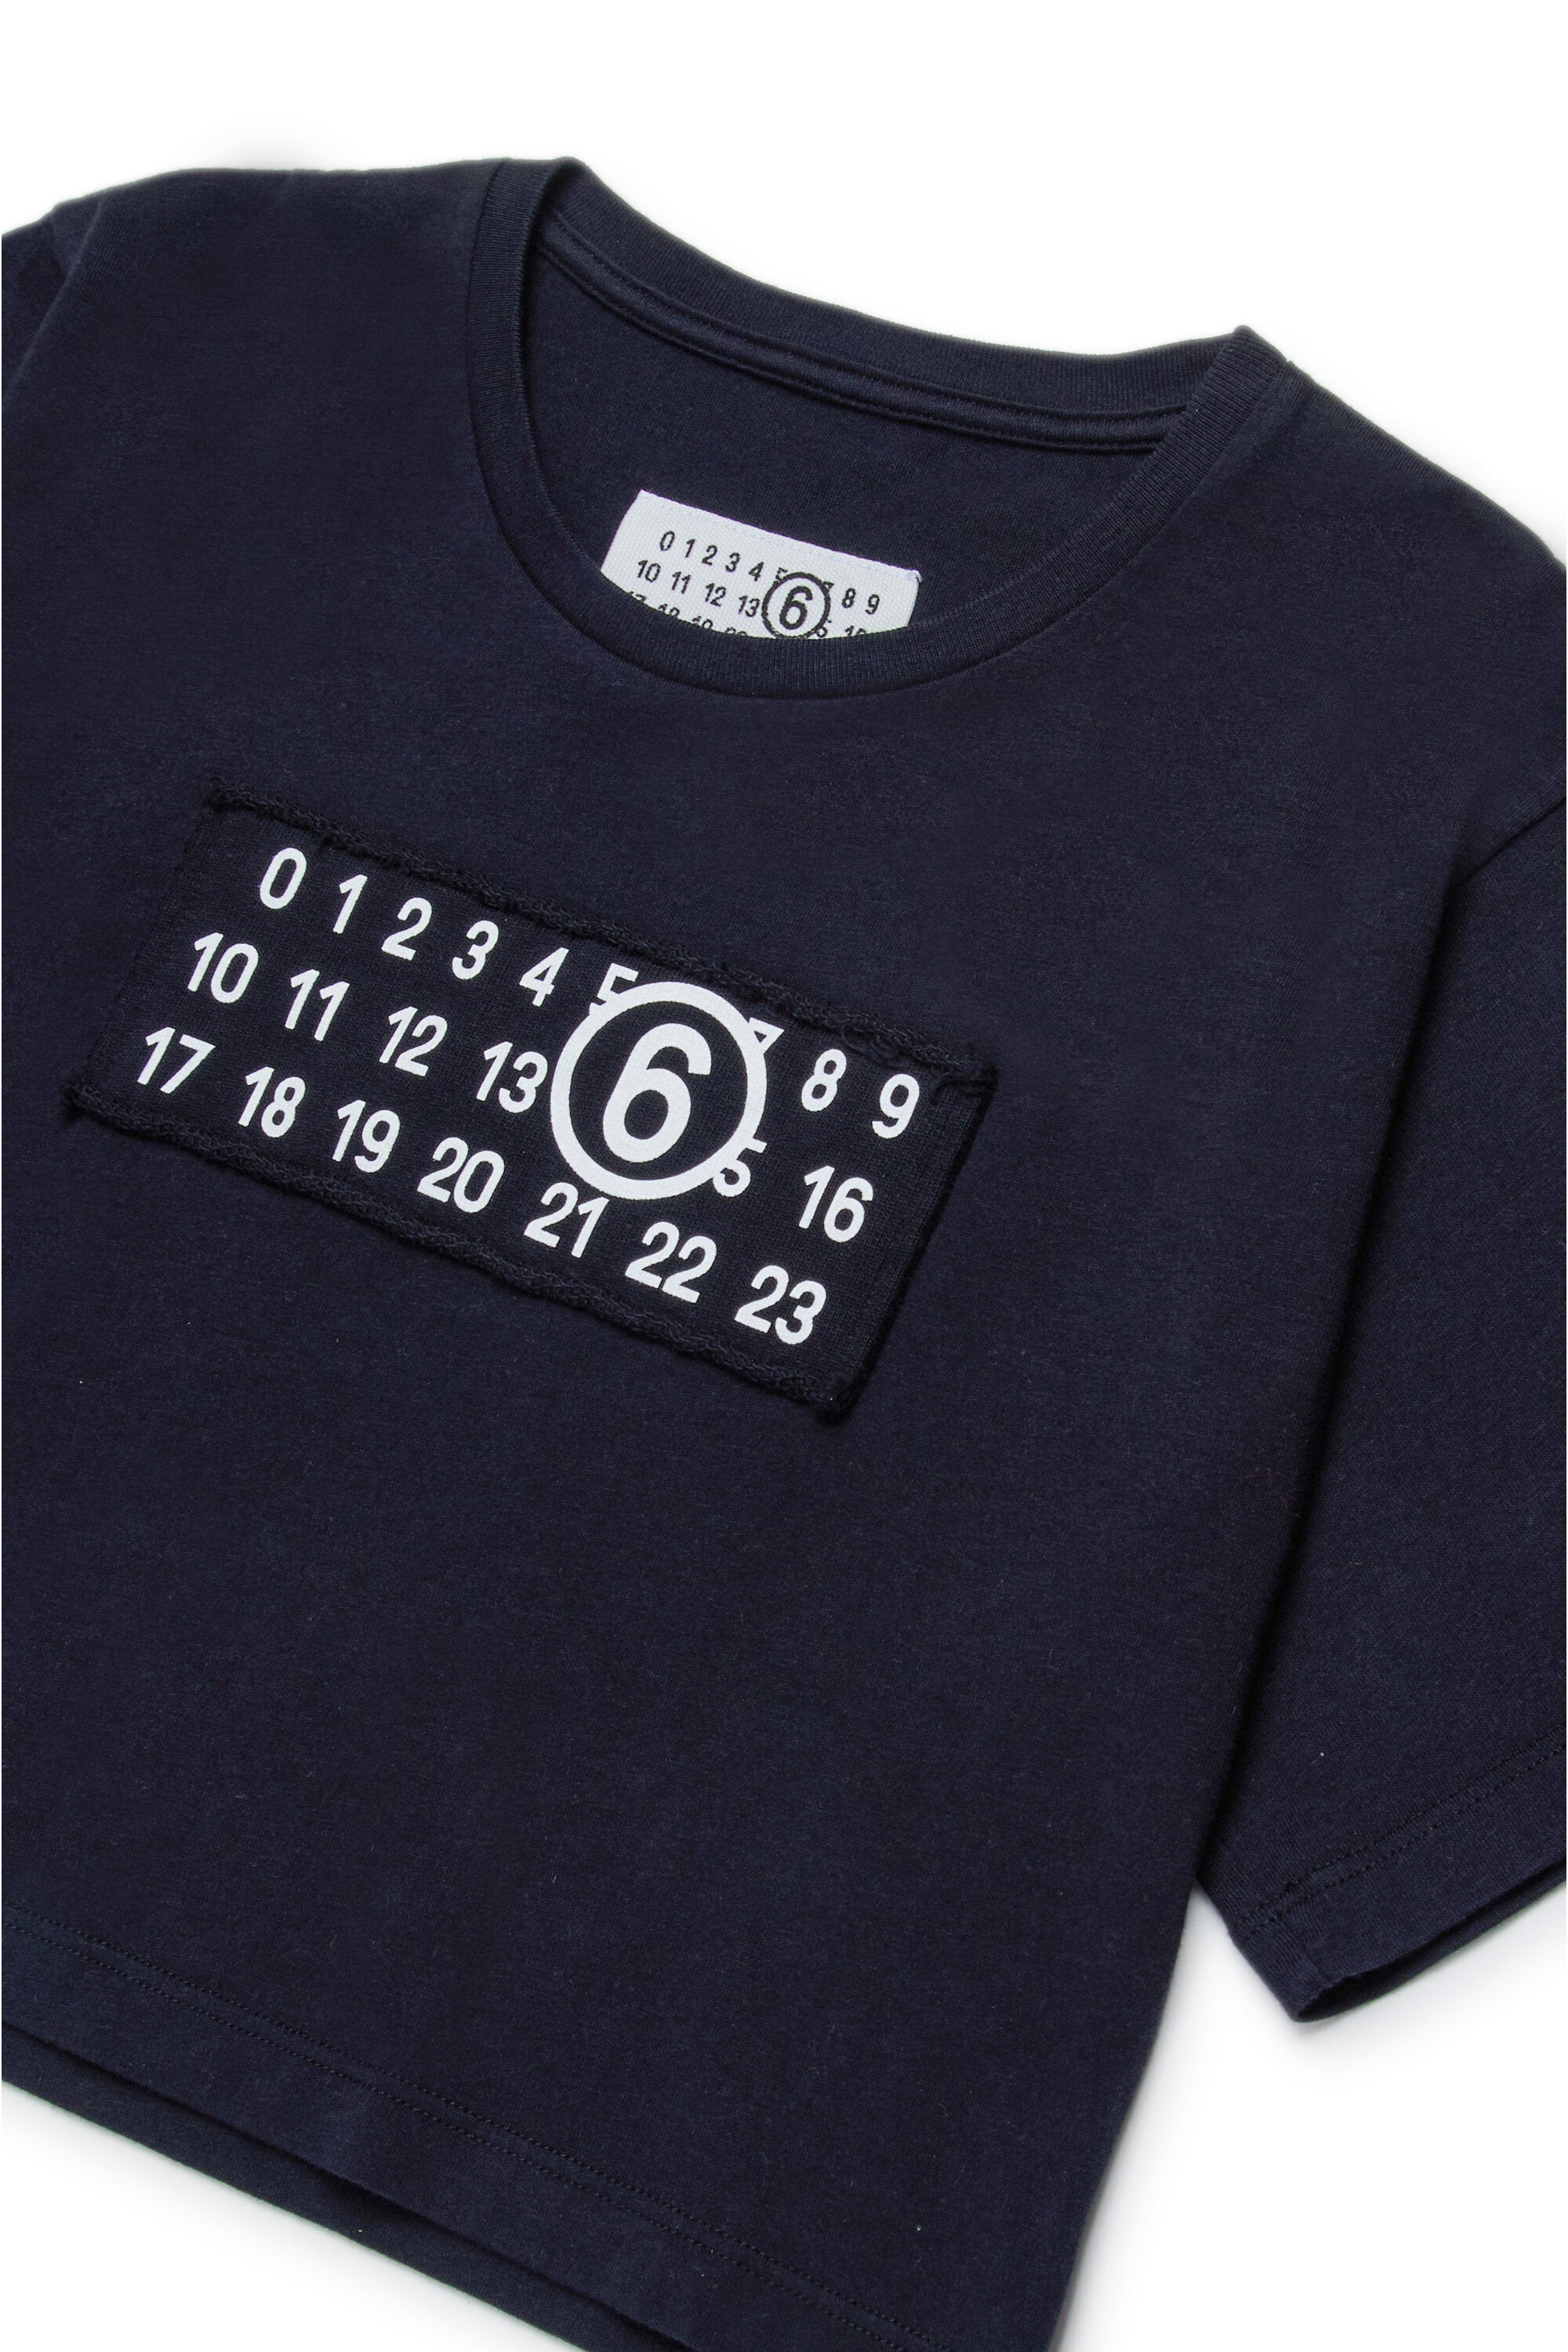 Camiseta corta con numeric logo